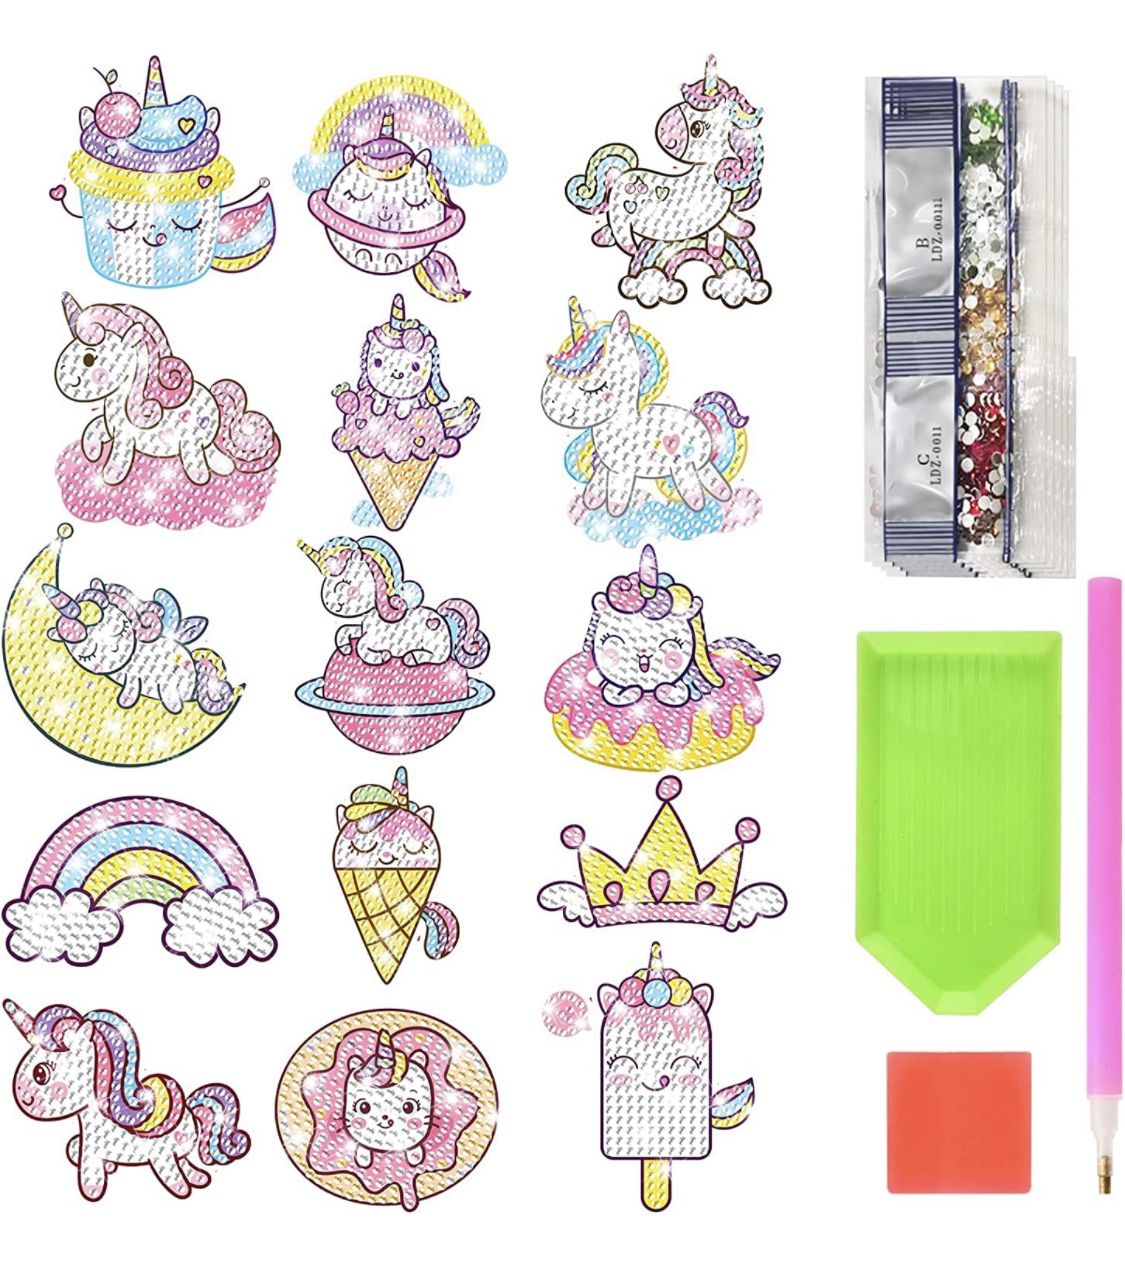 New: Unicorn Diamond Stickers Painting Kits (15pcs)